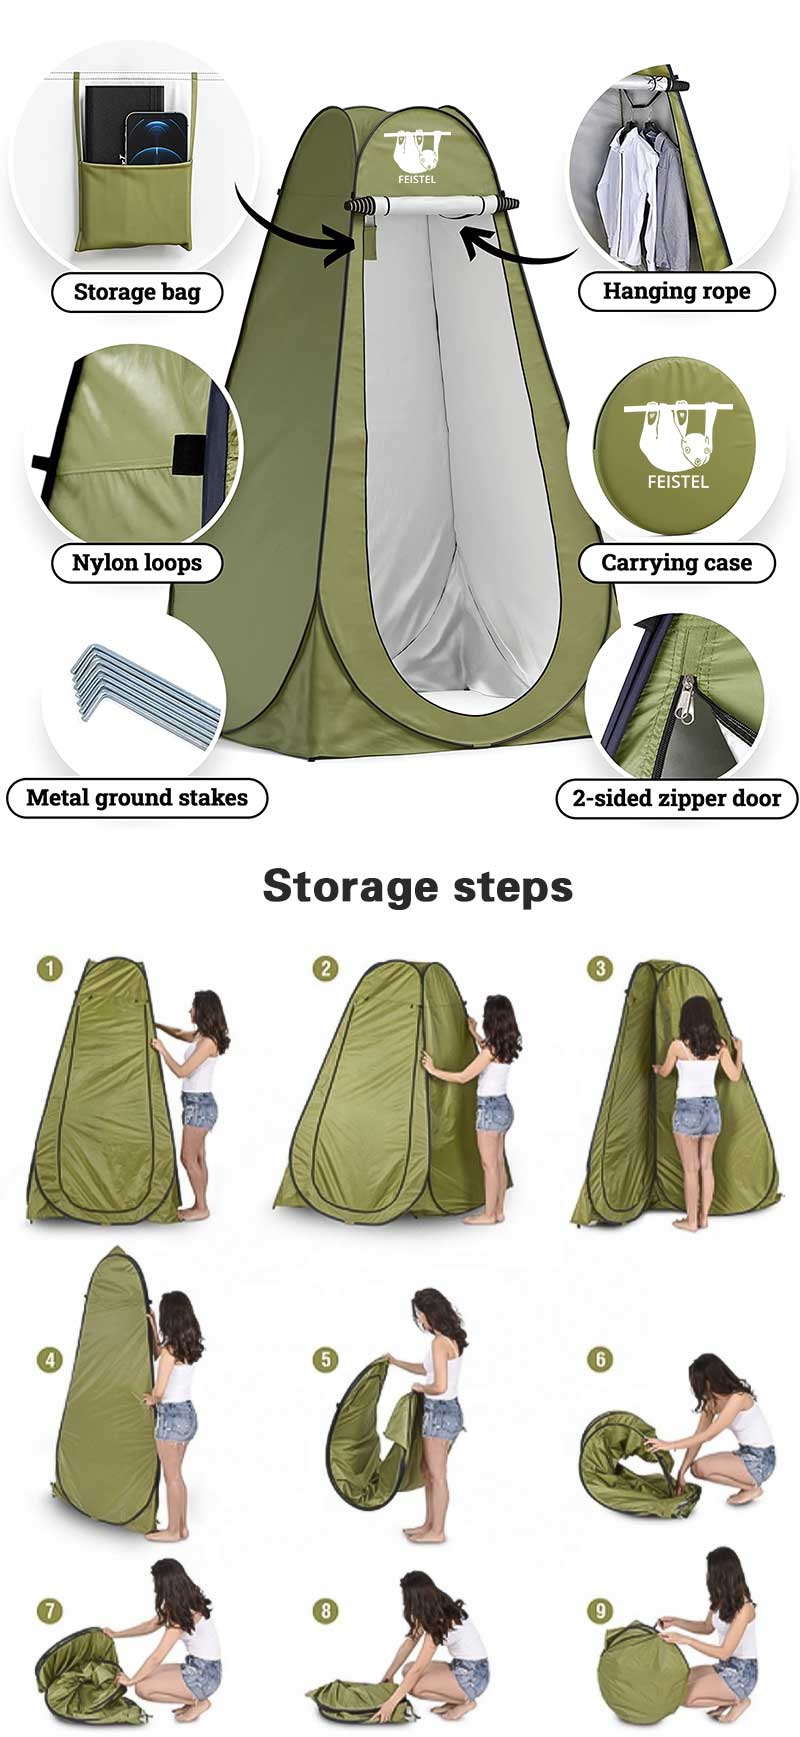 Pop Up Shower Tent